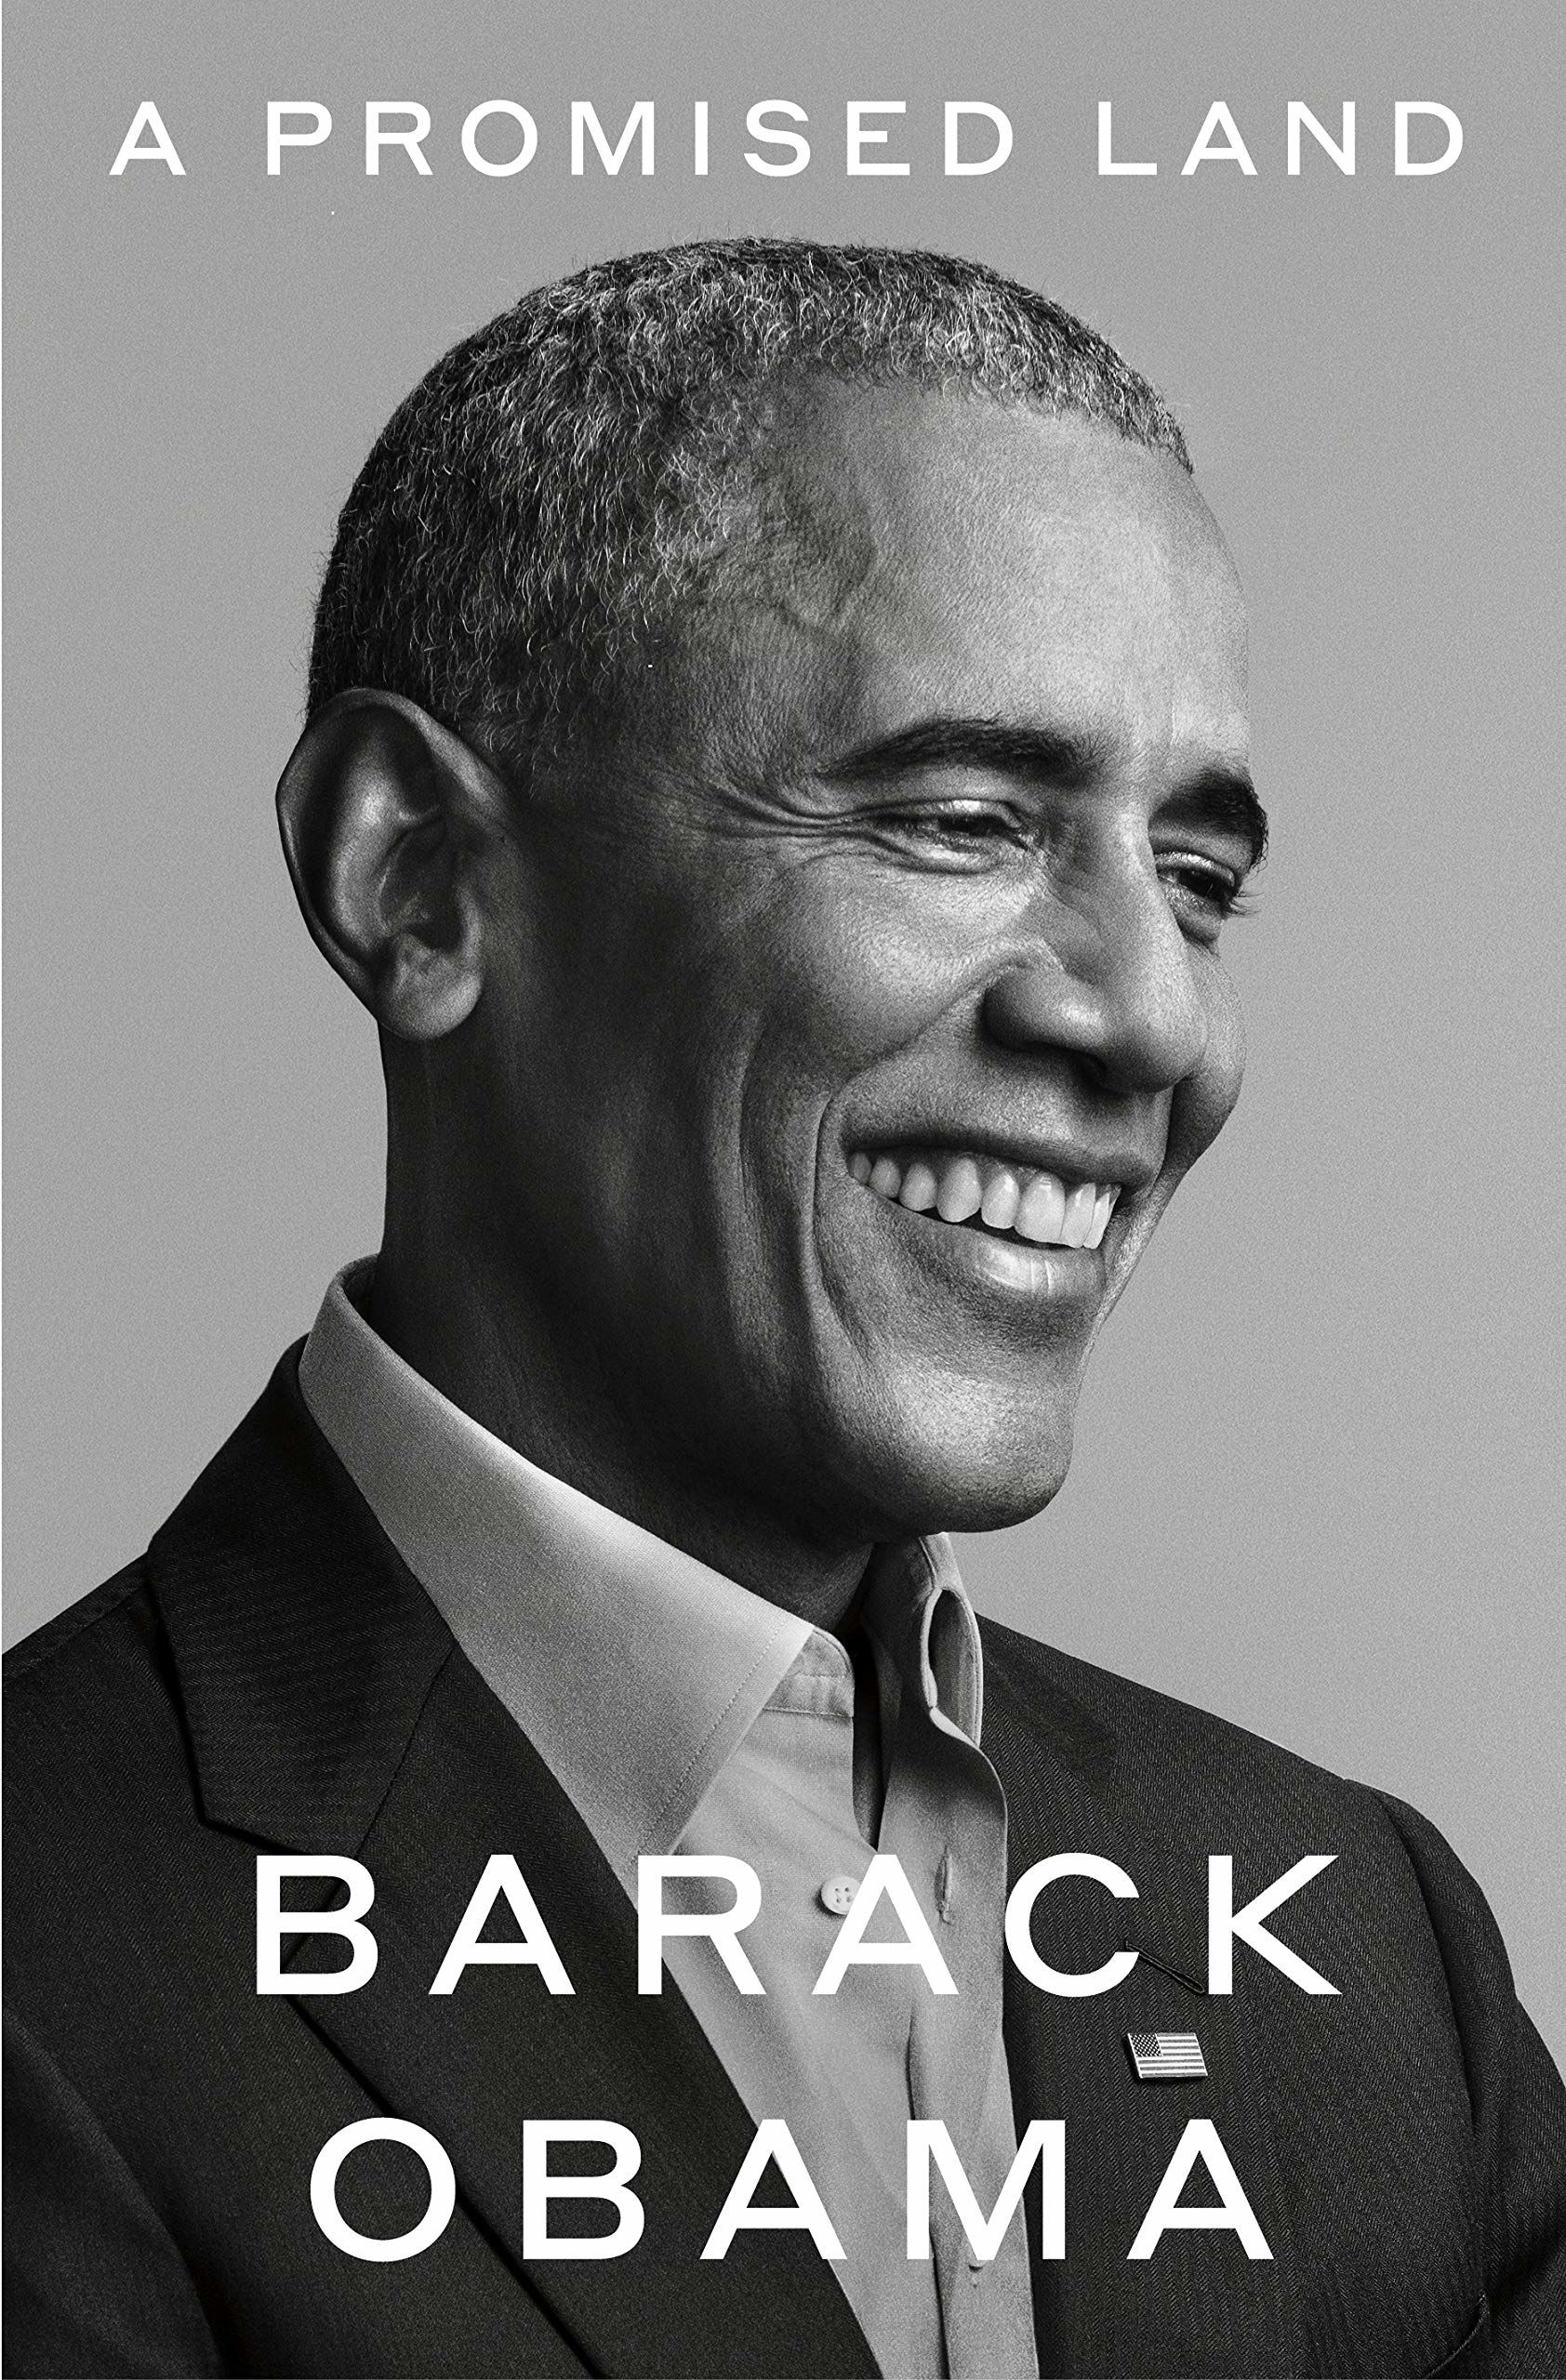 پیشگفتار کتاب جدید اوباما؛ «سرزمین موعود»